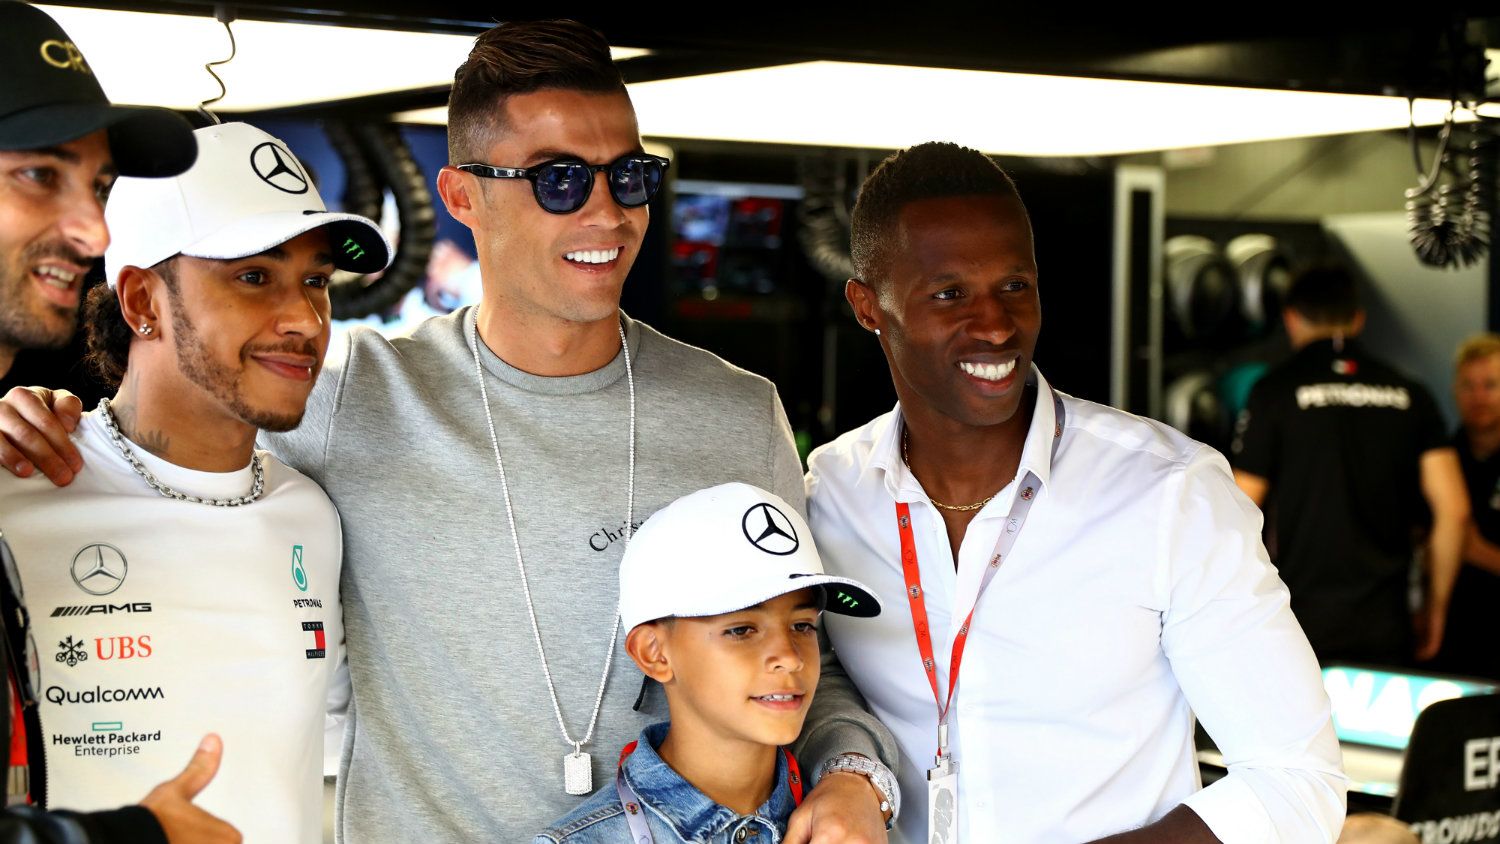 Lewis Hamilton vagy Cristiano Ronaldo a nagyobb sztár ezen a képen?